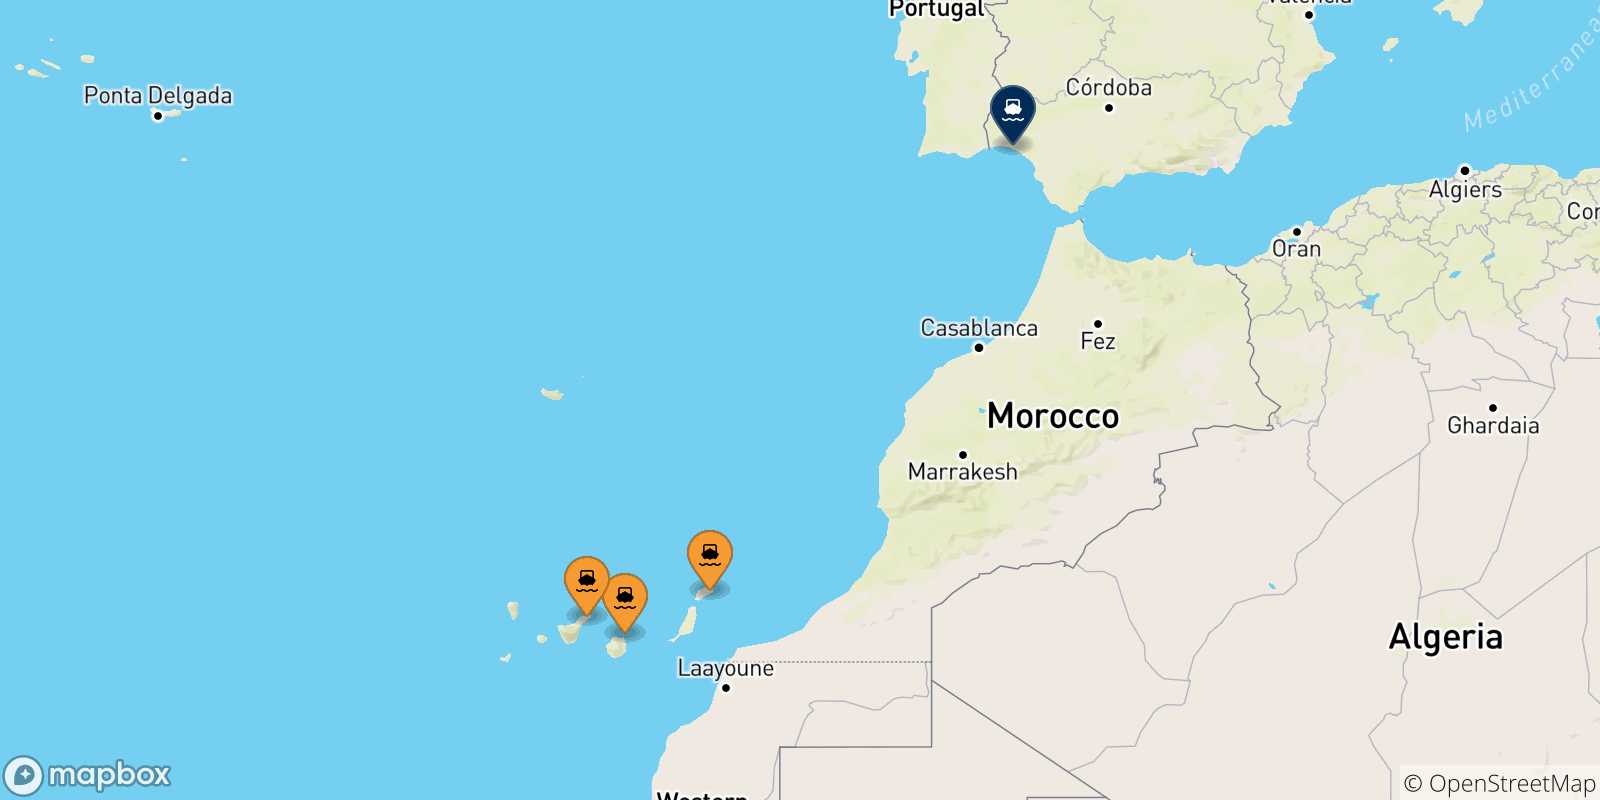 Mappa delle possibili rotte tra la Spagna e Huelva